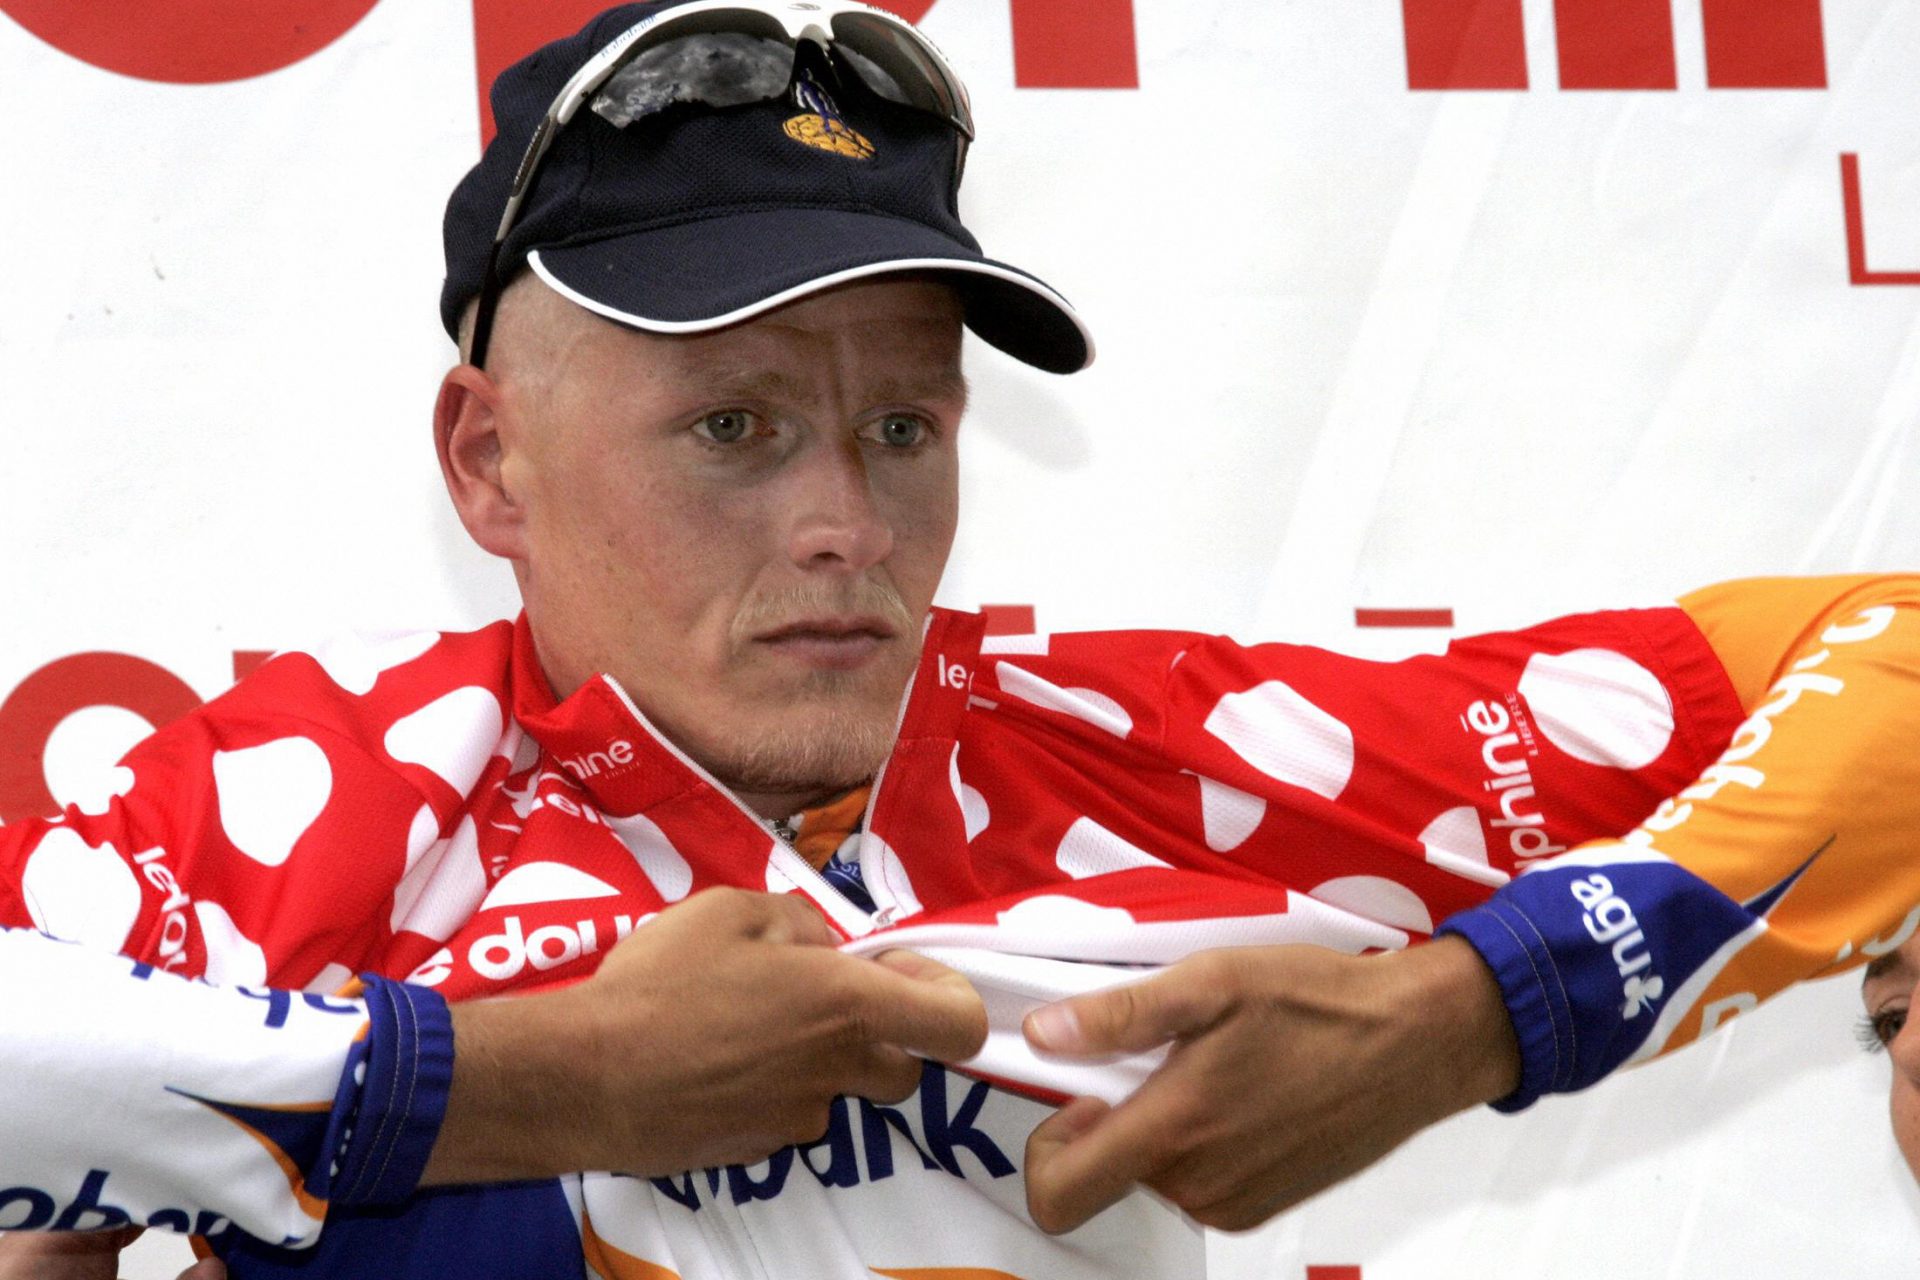 Tour de France 2006